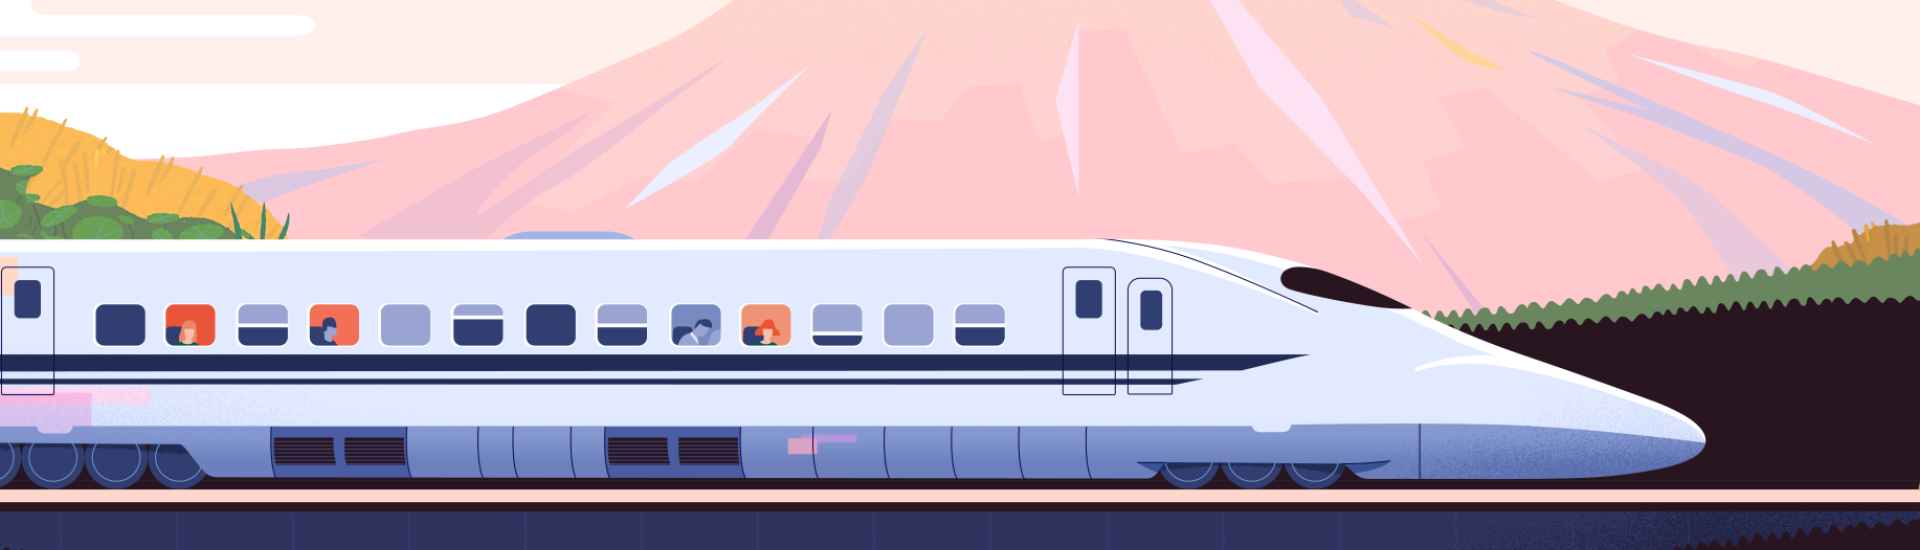 Ilustração de shinkansen - o trem-bala japonês.